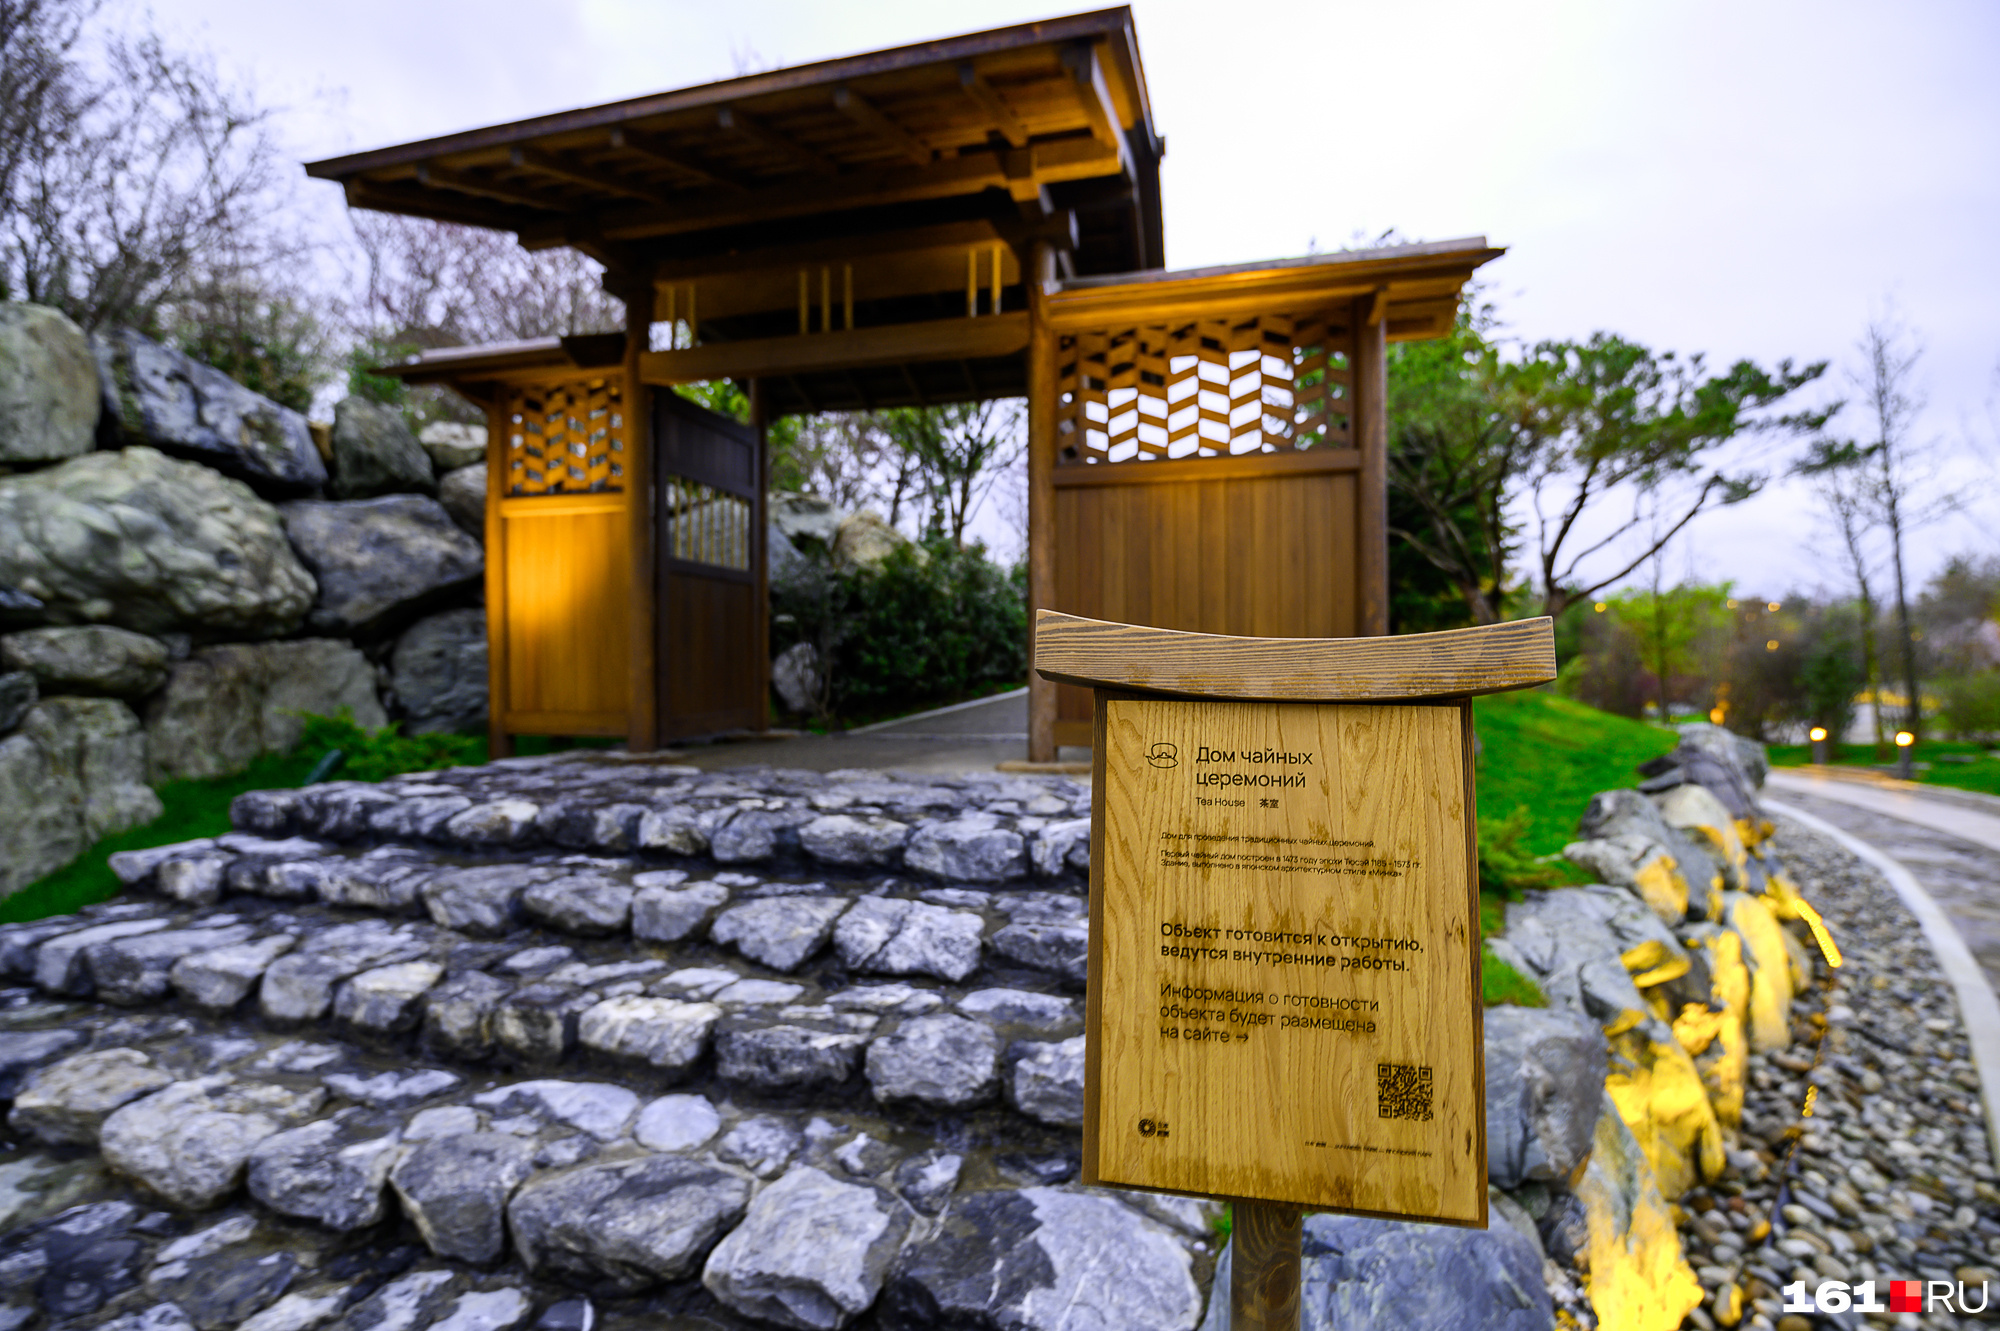 Как получить код в японский сад краснодар. Японский сад в парке Галицкого. Краснодар парк Галицкого японский сад чайный домик. Краснодар японский сад чайный домик. Японский сад в парке Краснодар.